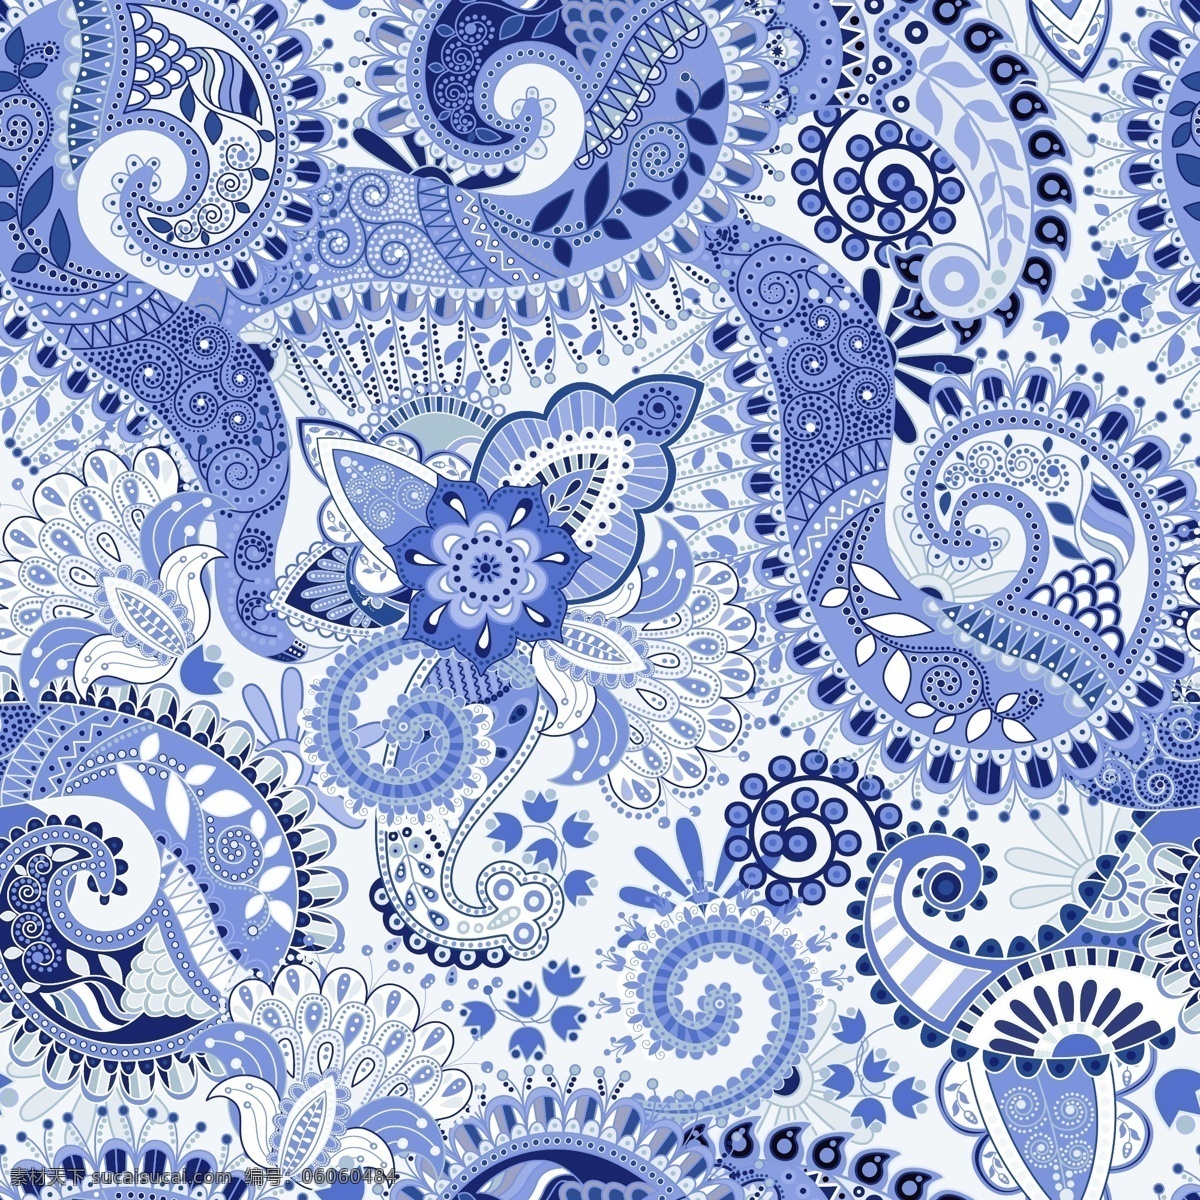 蓝色 佩 斯利 花卉 青花瓷 印度 无缝 图案 背景 矢量 矢量背景 广告背景 佩斯利